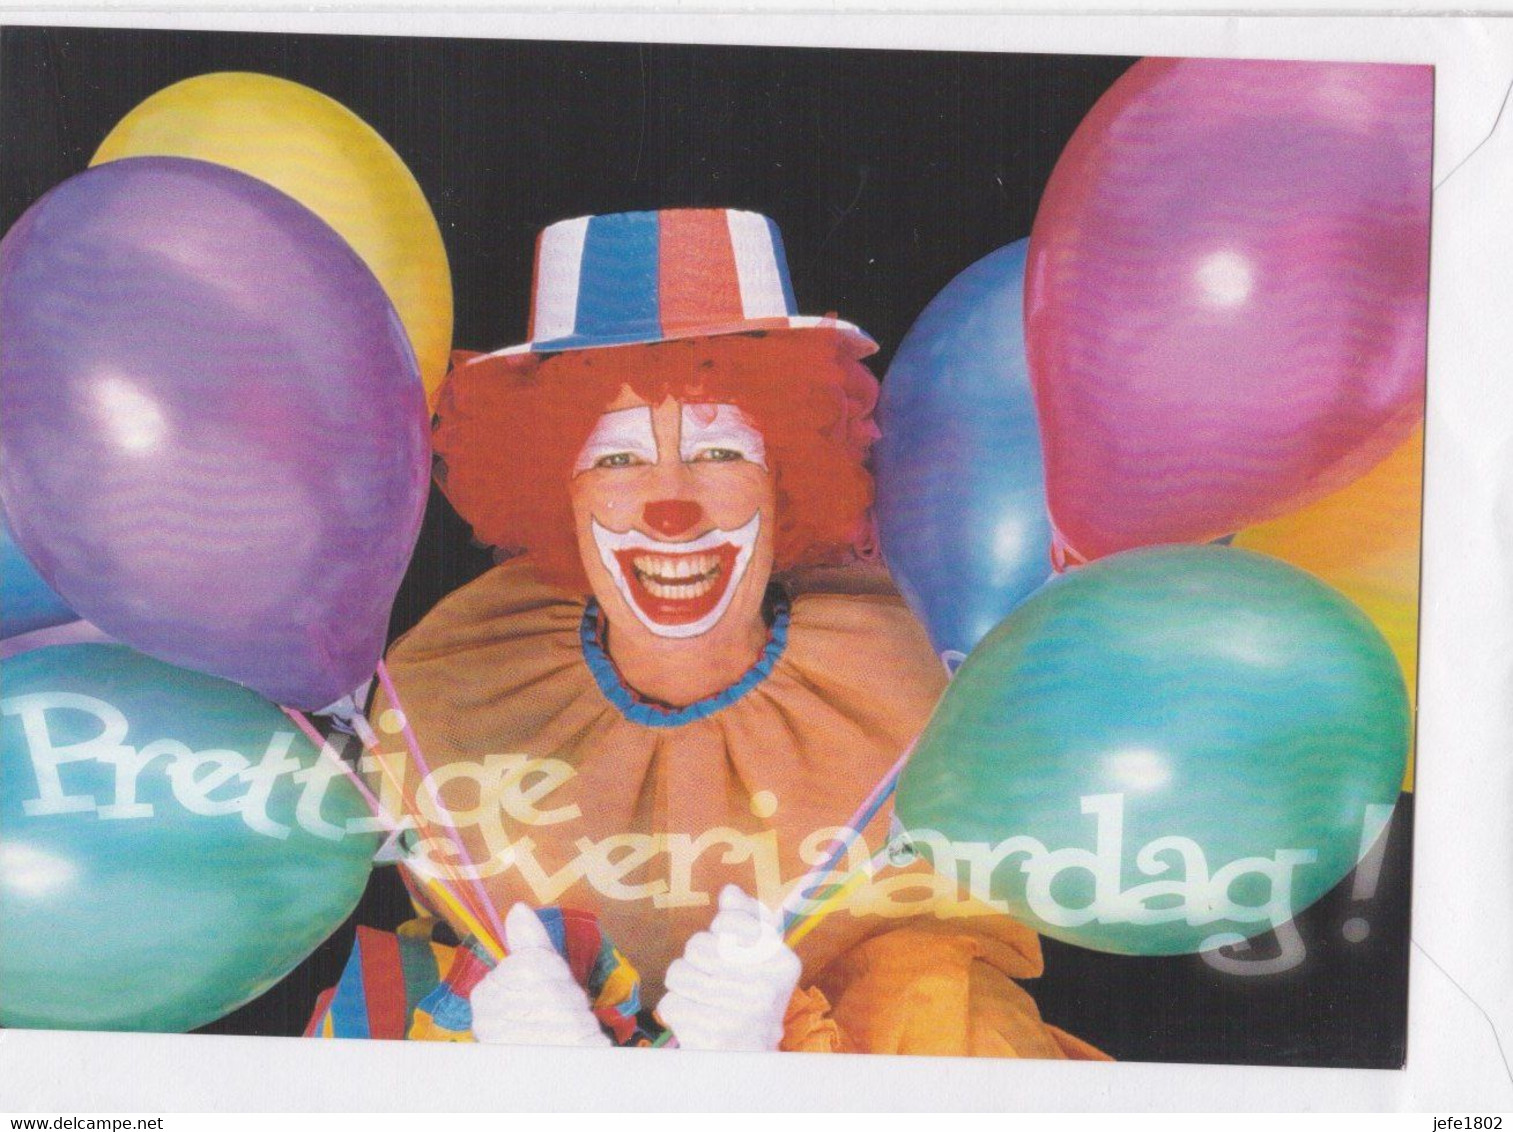 Postogram 179 N / 00 - Prettige Verjaardag - Balloons - Clown - Postogram